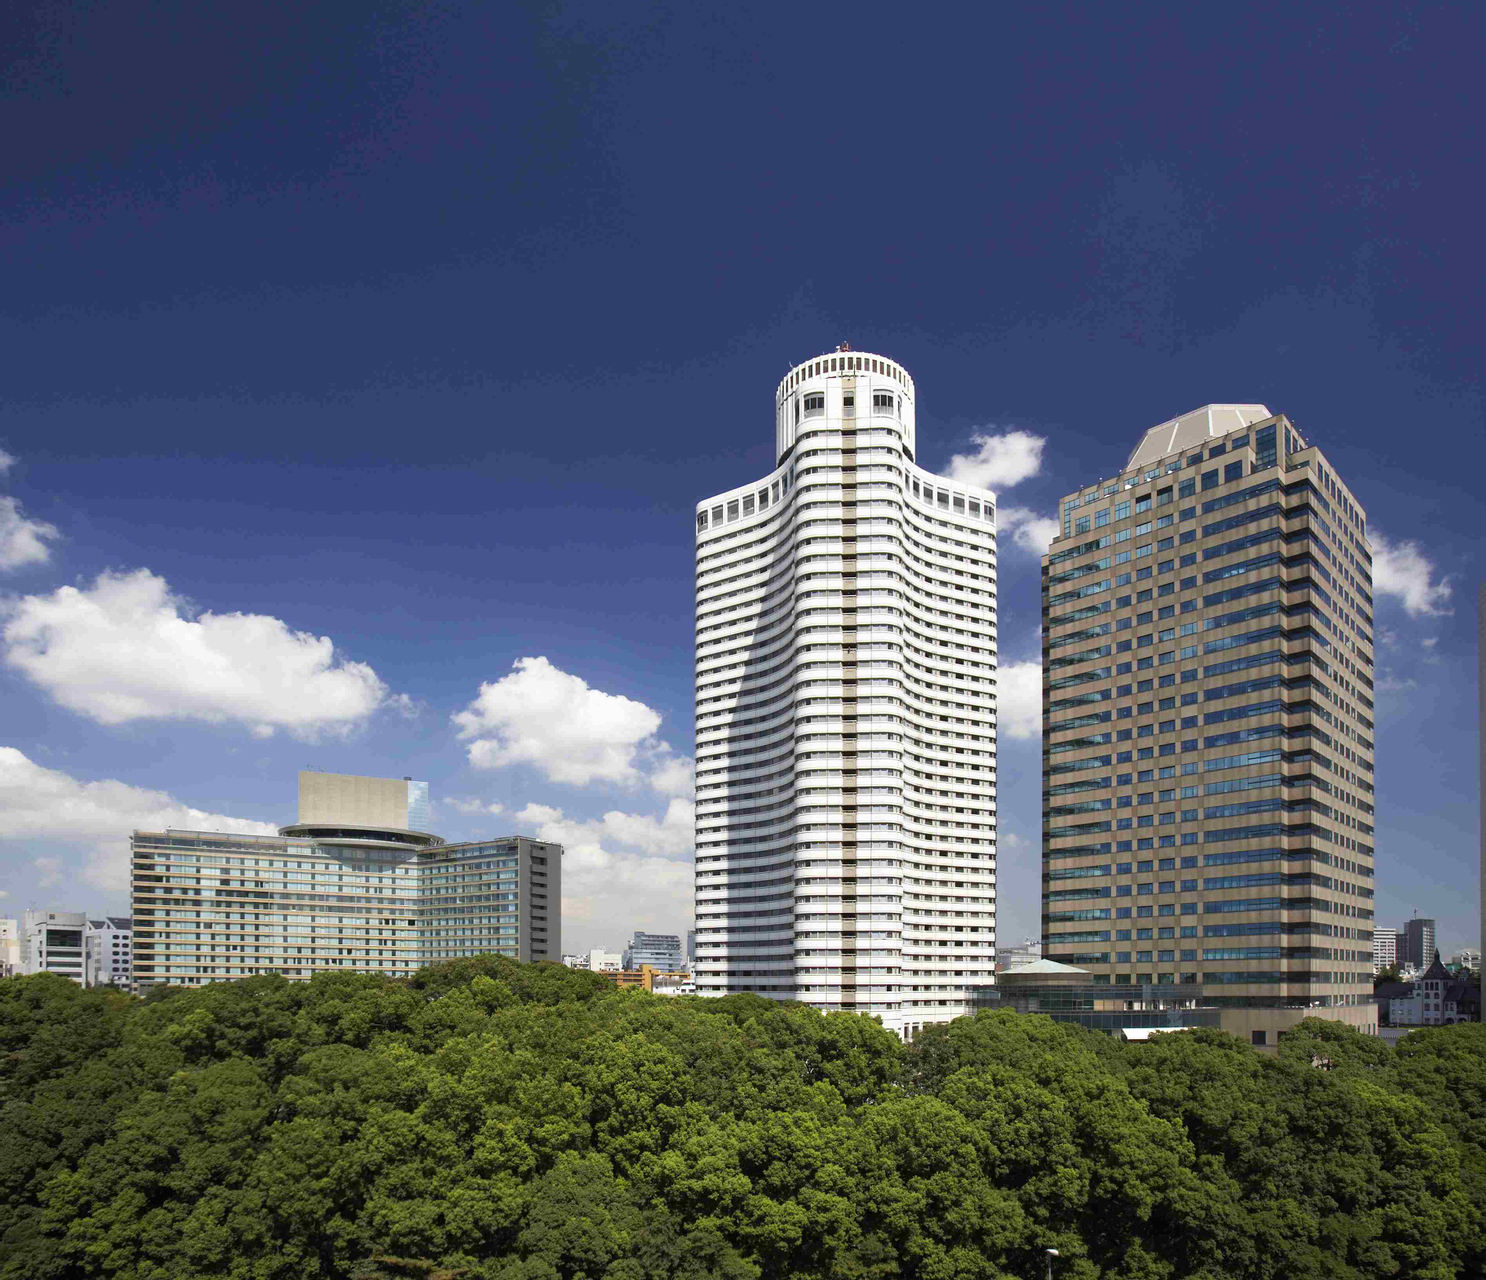 Exterior & Views 1, Hotel New Otani Tokyo Garden Tower, Shinjuku